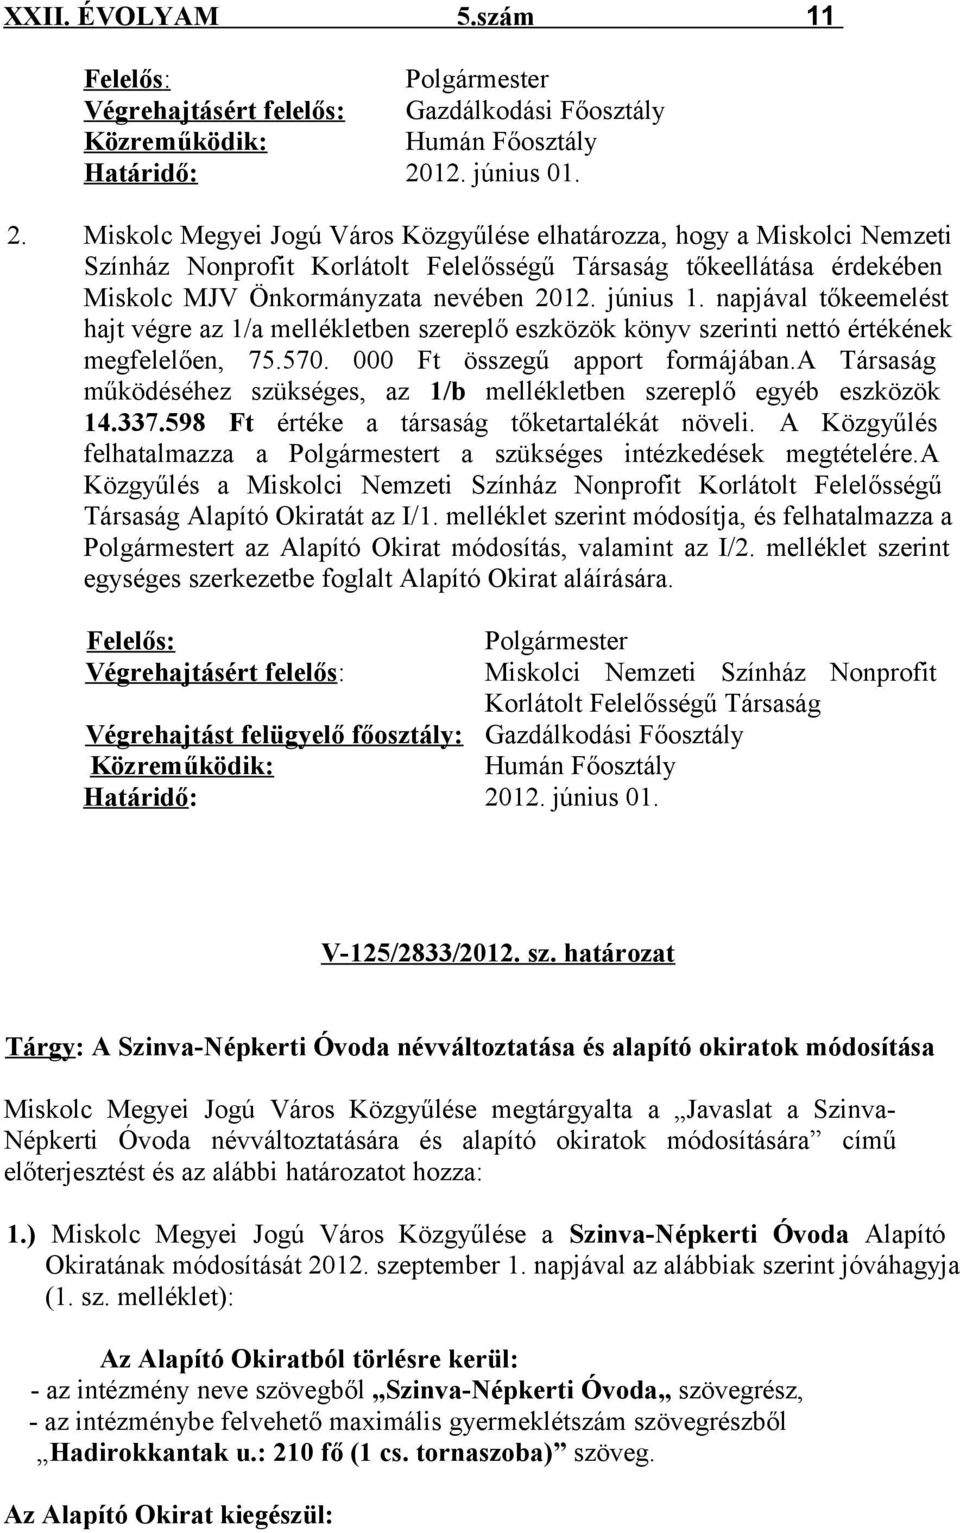 Miskolc Megyei Jogú Város Közgyűlése elhatározza, hogy a Miskolci Nemzeti Színház Nonprofit Korlátolt Felelősségű Társaság tőkeellátása érdekében Miskolc MJV Önkormányzata nevében 2012. június 1.